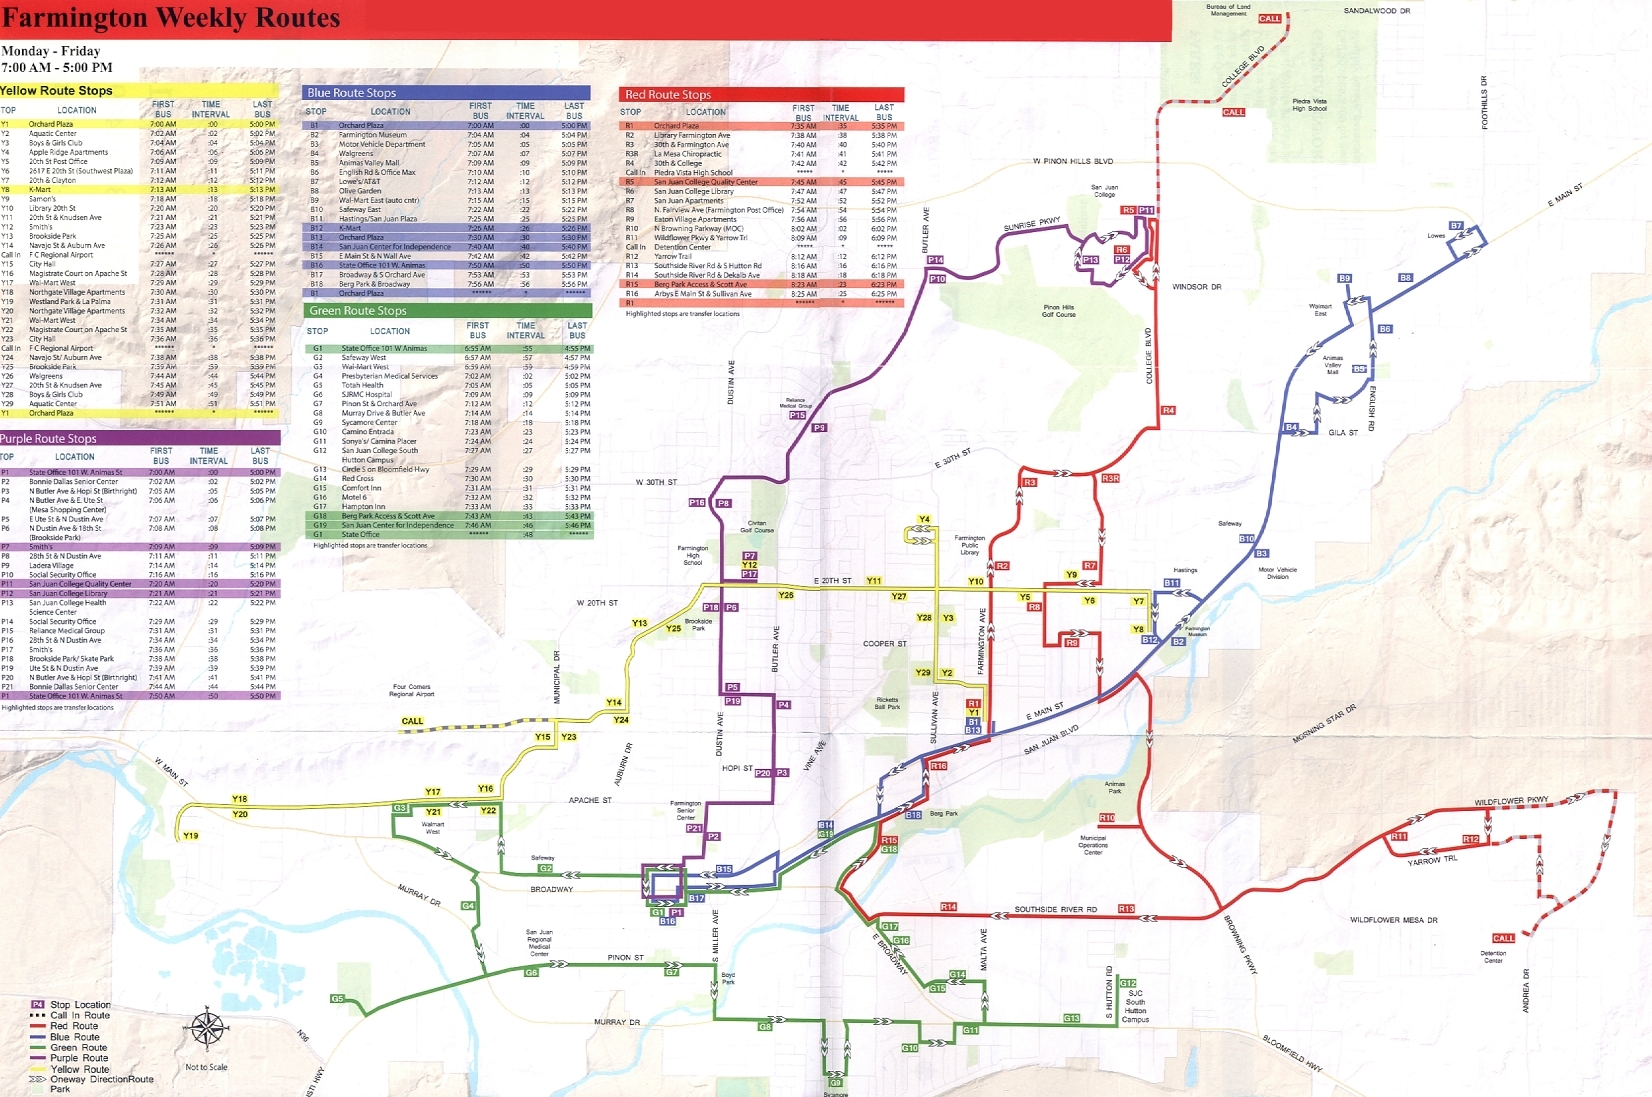 How to get to N M M K in Glendale by Bus or Subway?